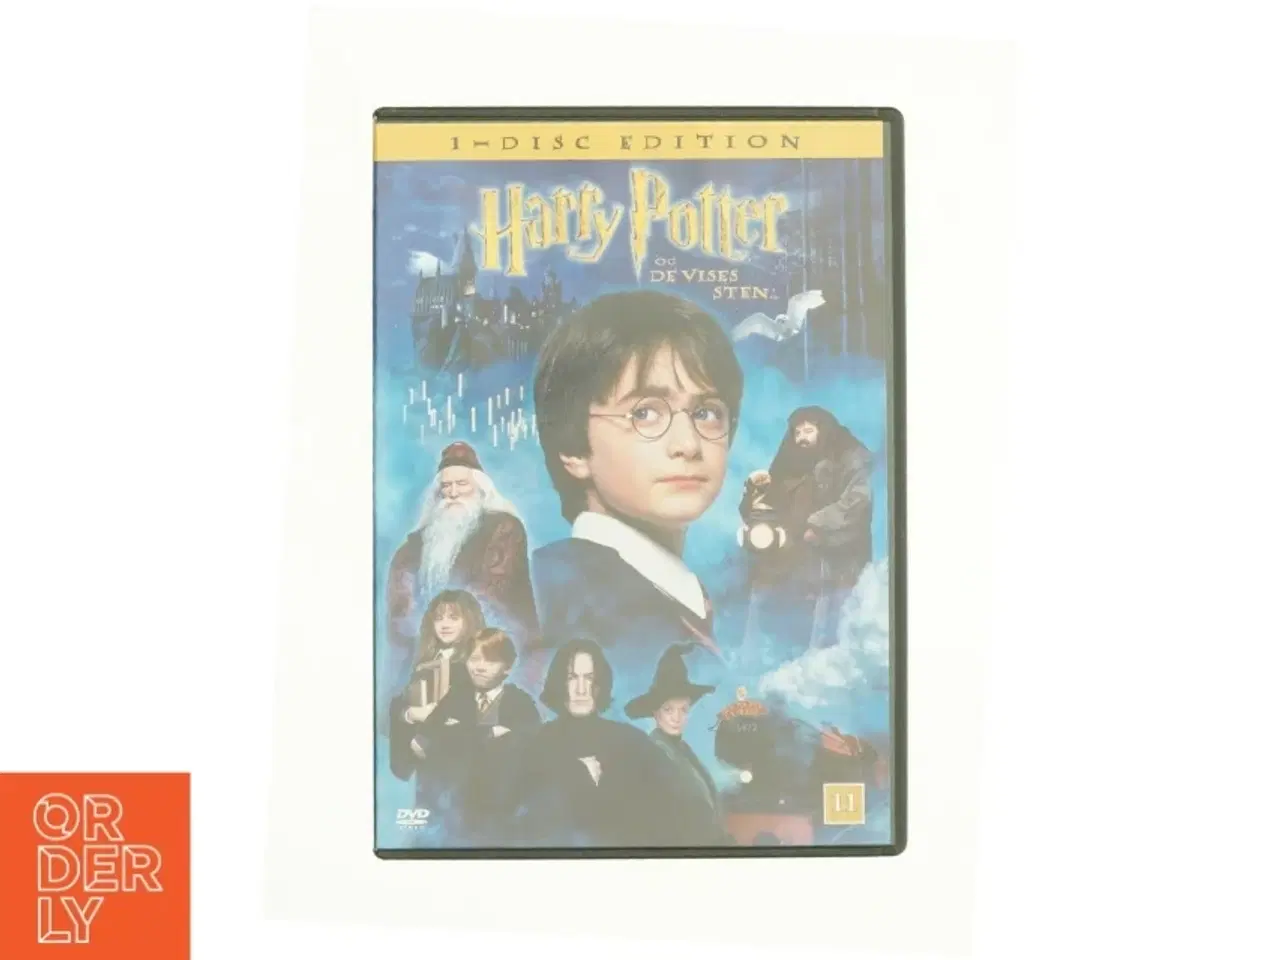 Billede 1 - Harry Potter Og De Vises Sten fra DVD